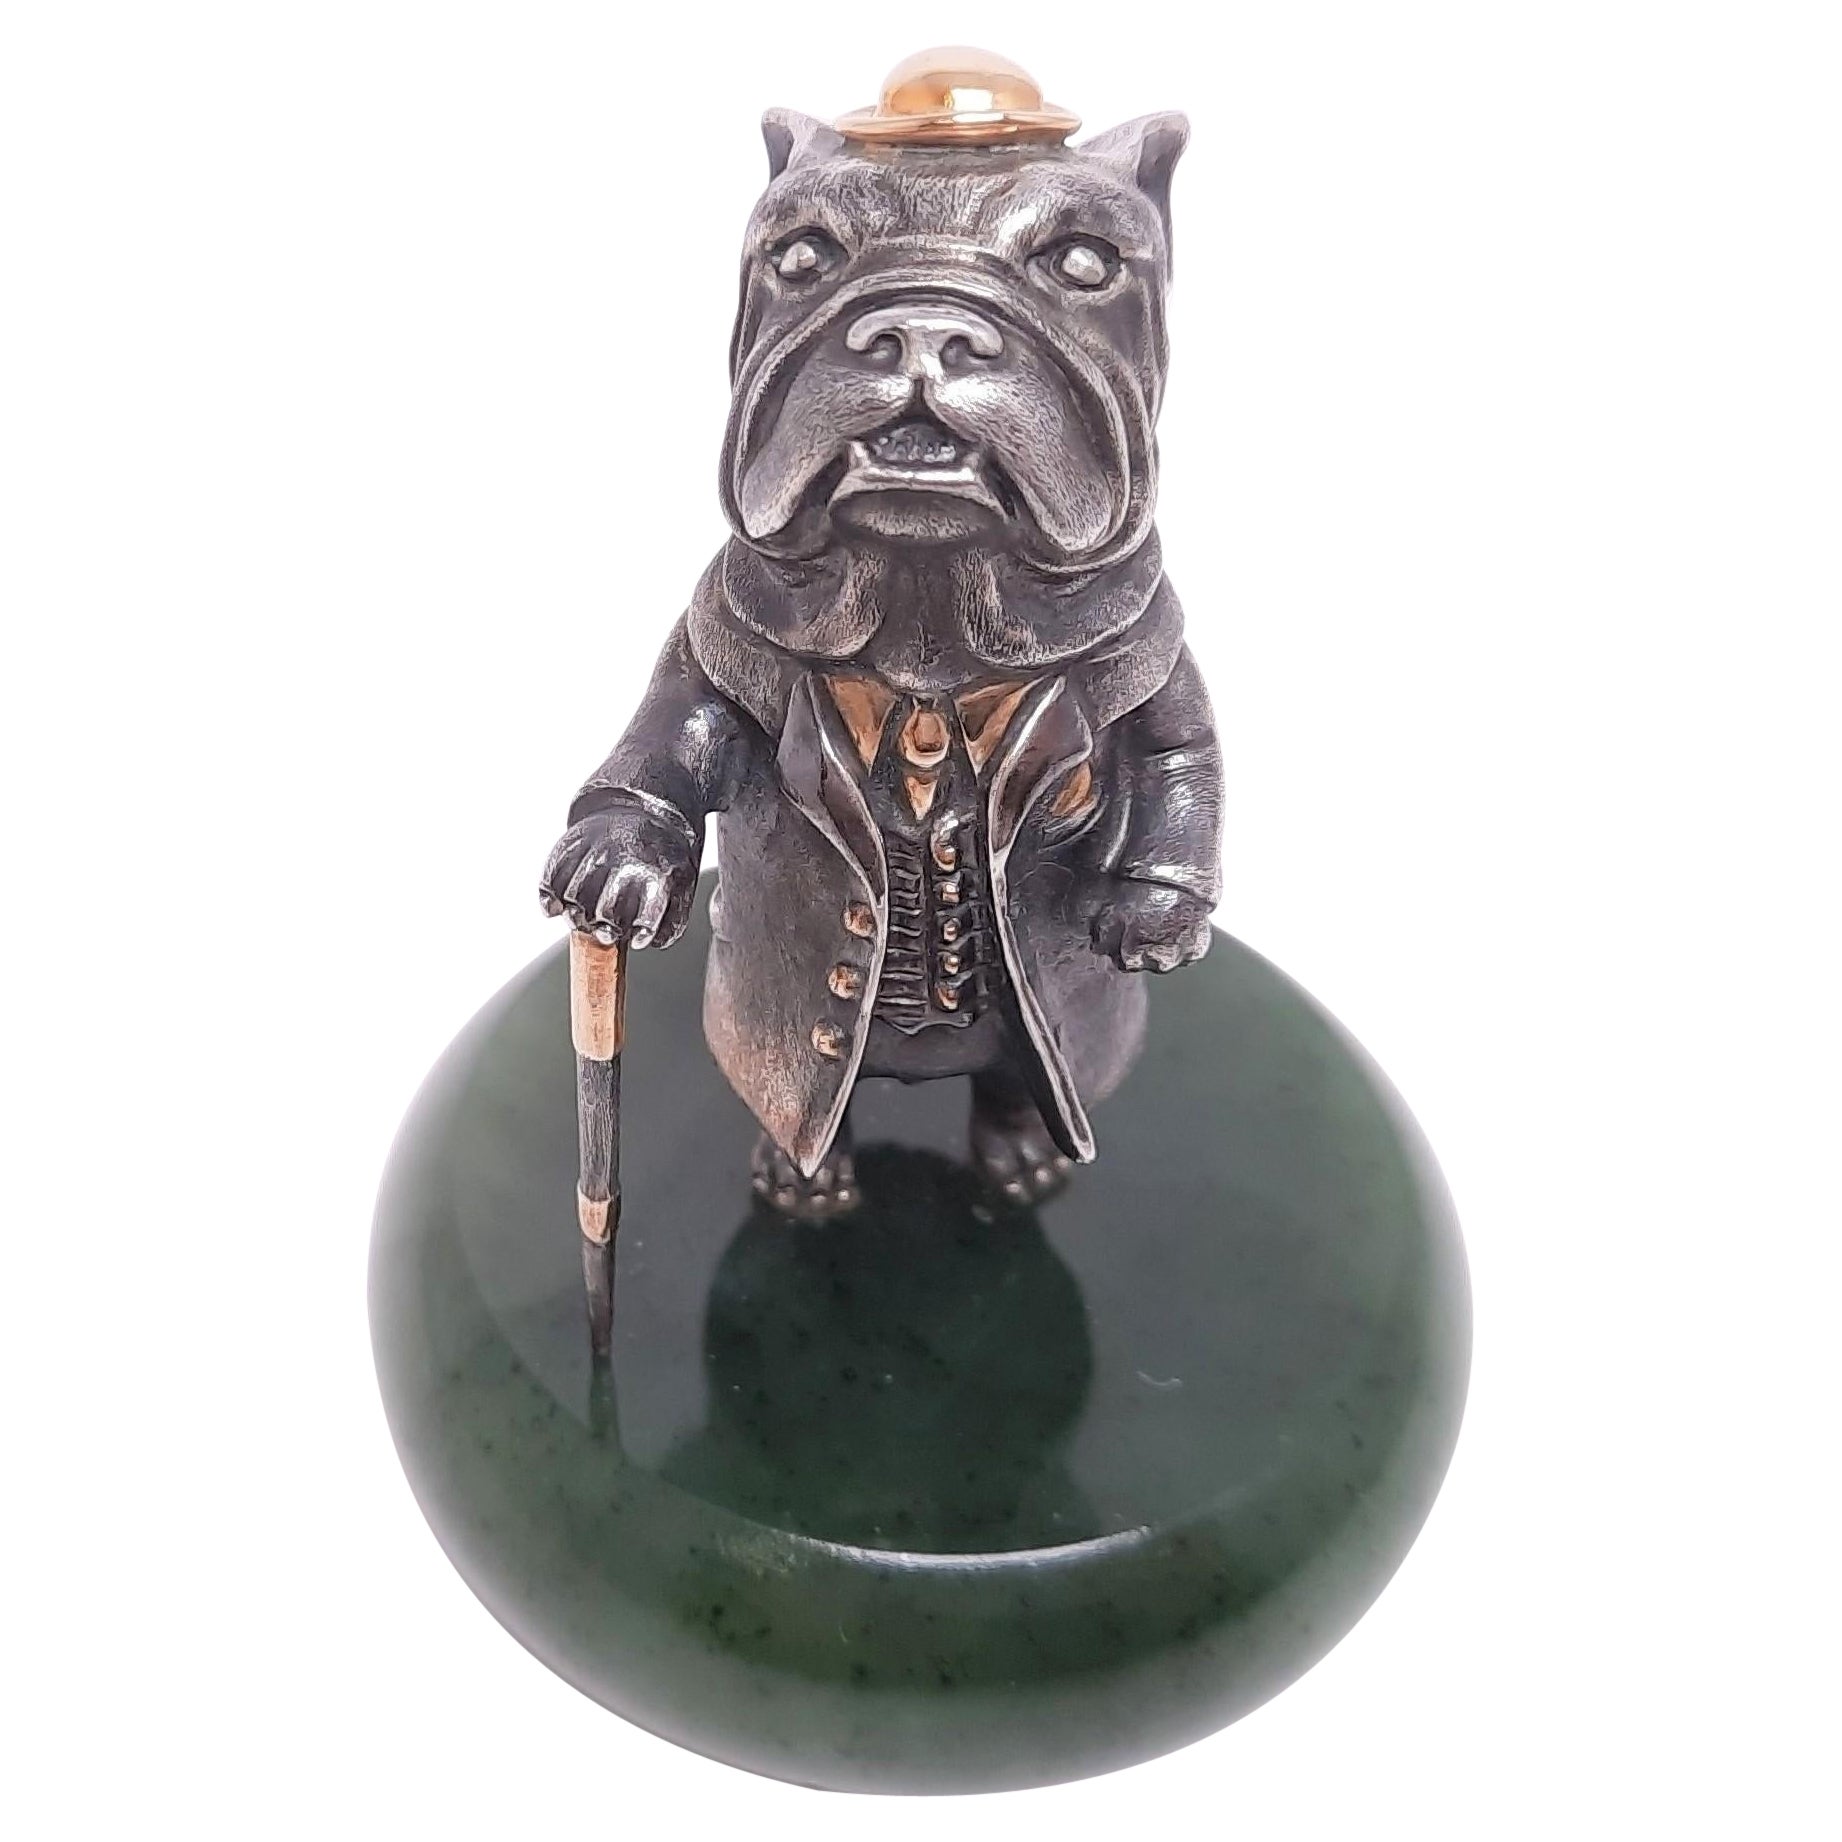 Miniatur-hund-Talisman, echtes Silber, vergoldet, Dr. Watson